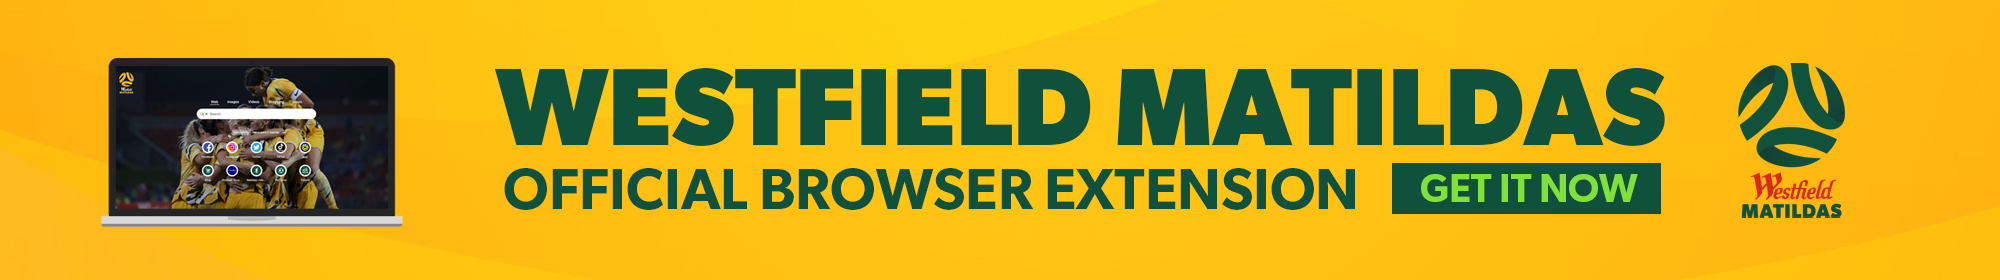 Westfield Matildas Browser Extension Thin Banner